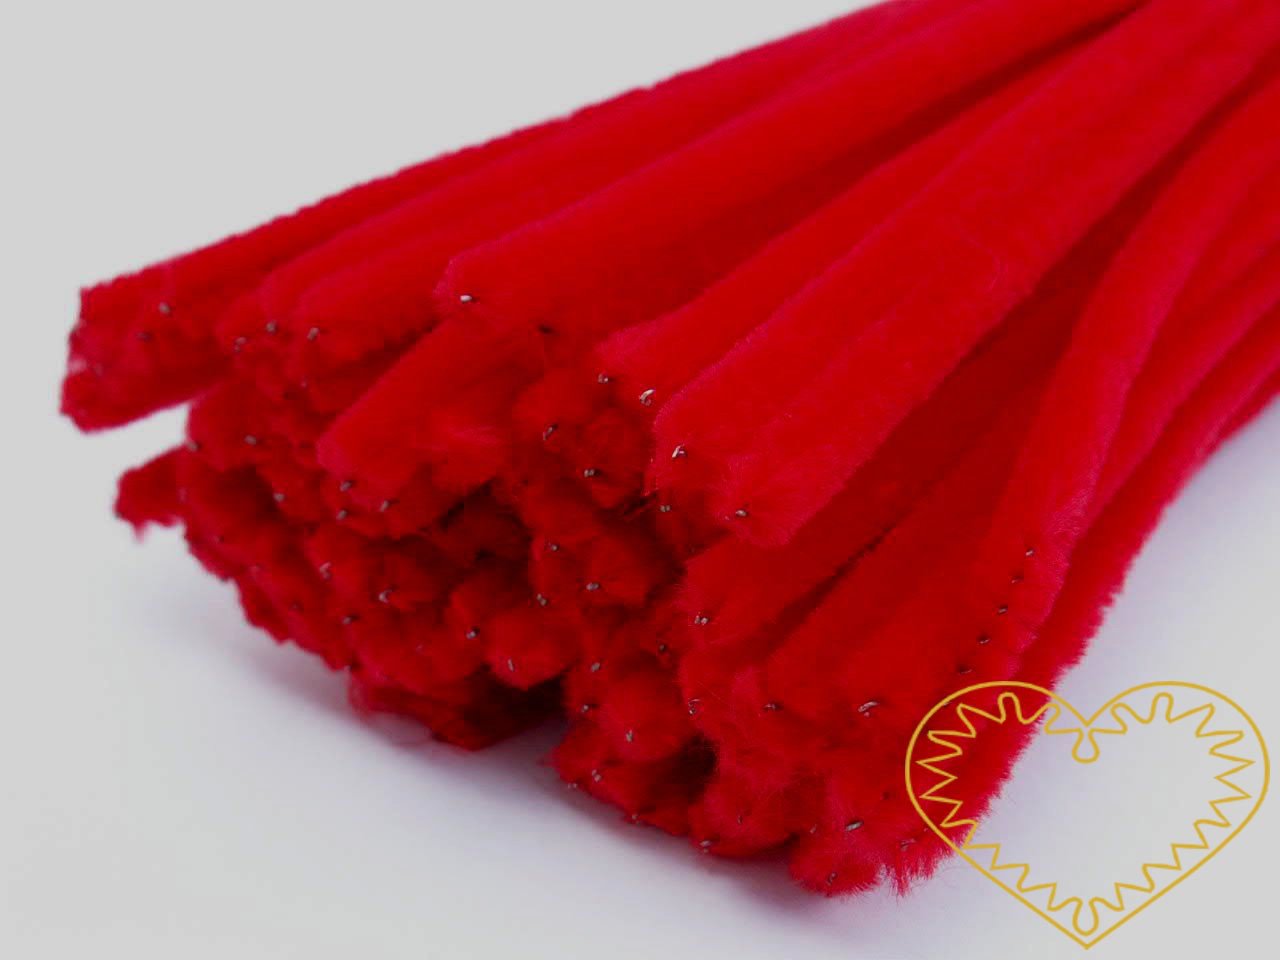 Modelovací chlupatý drátek červený - délka cca 30 cm. Drátěná tyčinka opletená vláknem se používá k výrobě různých hraček i ozdob. Lze ji všelijak tvarovat, kroutit, splétat, stříhat, kombinovat například s bambulkami, lepit. Drátek skvěle imituje